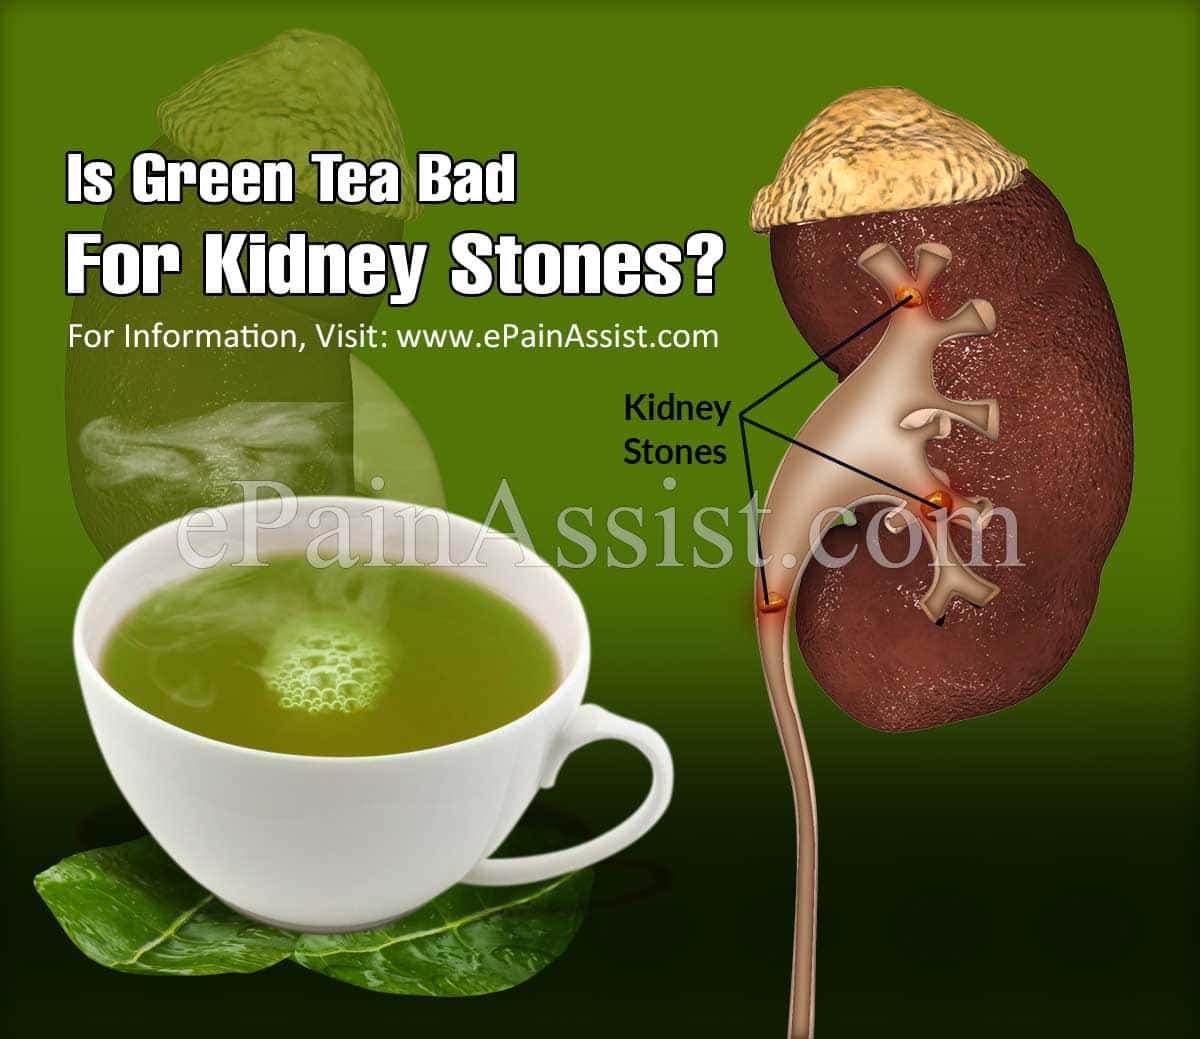 Is Green Tea Bad for Kidney Stones?